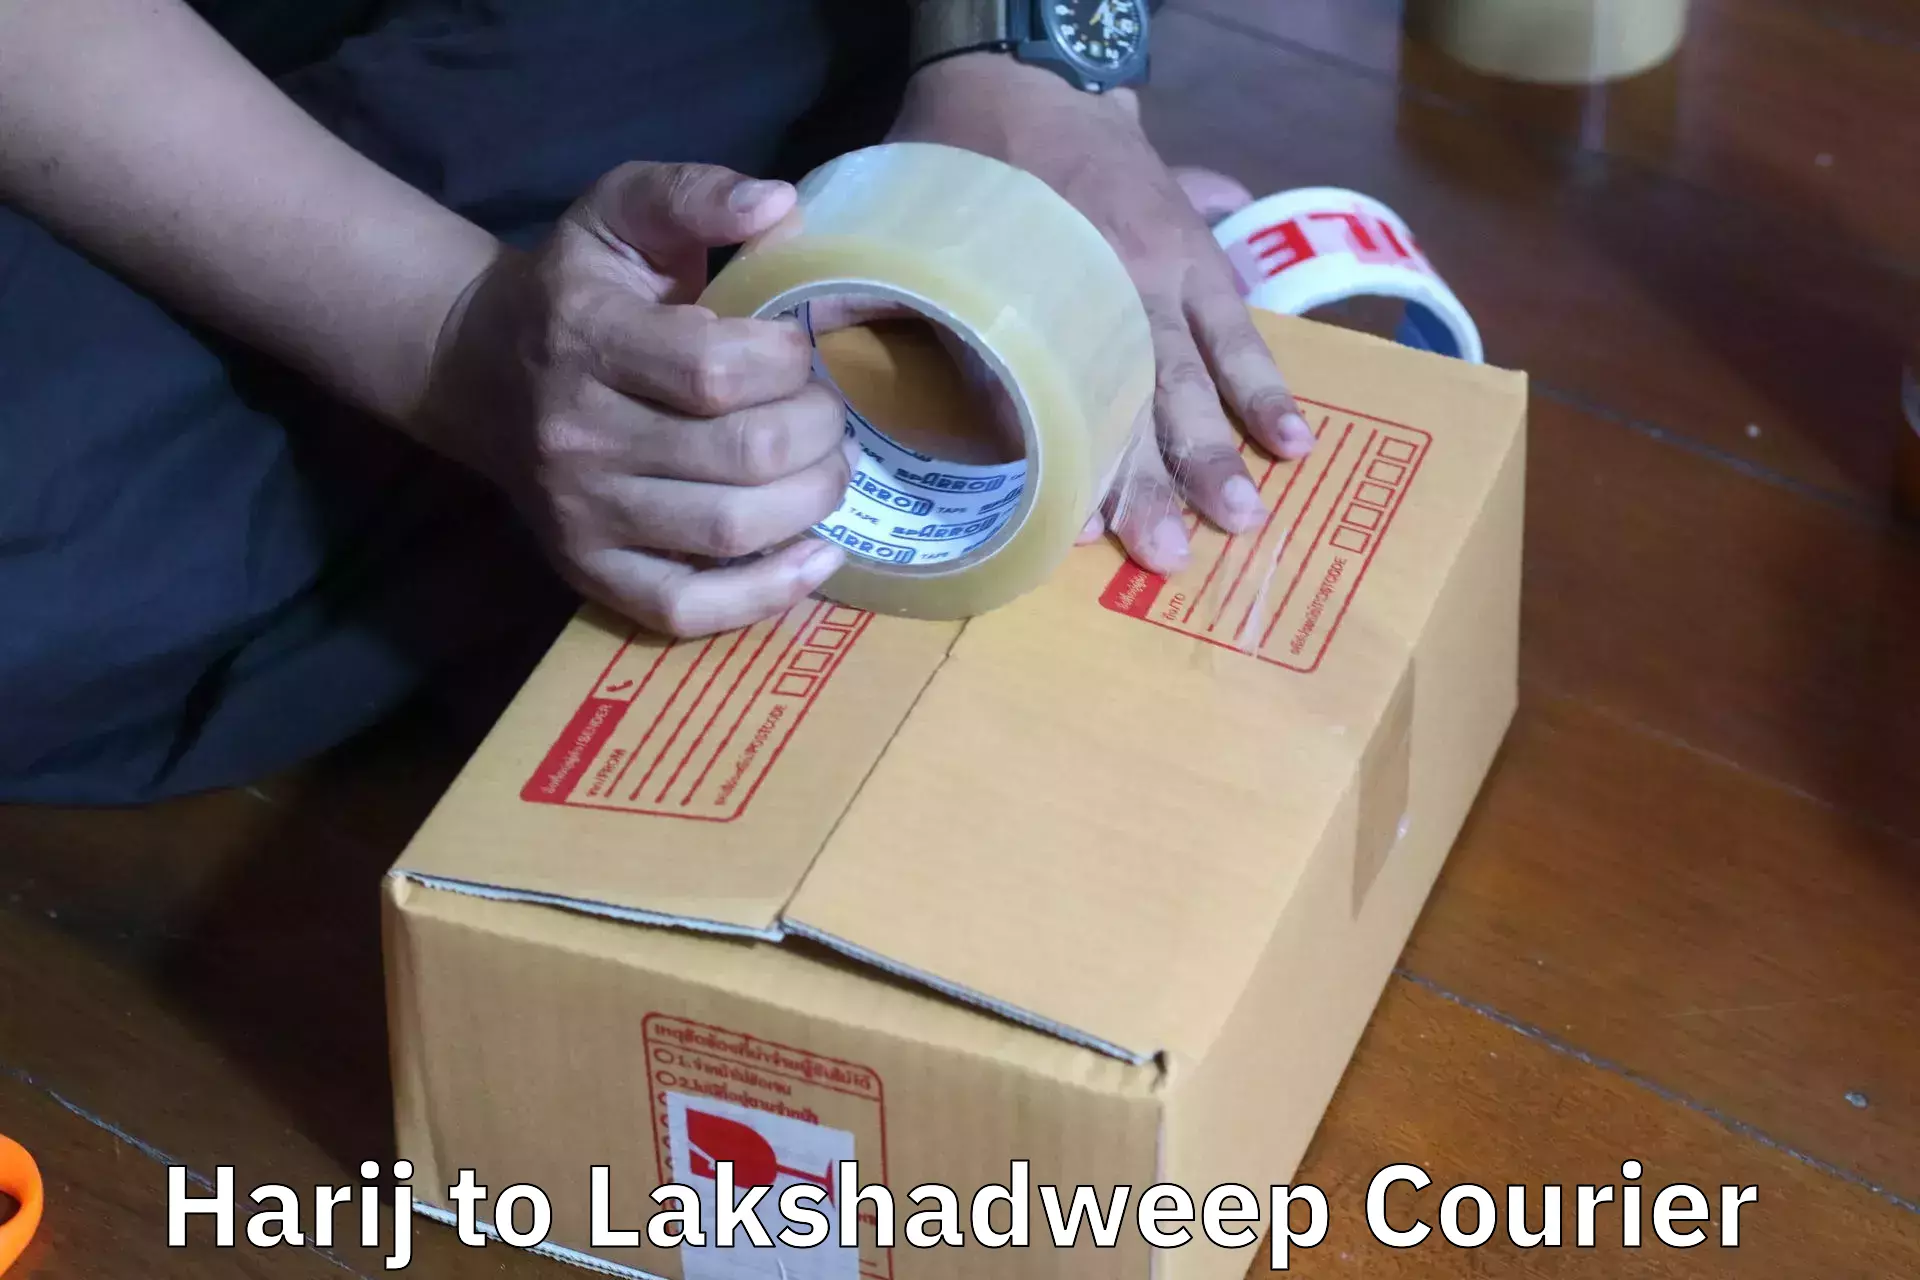 Home shifting experts Harij to Lakshadweep